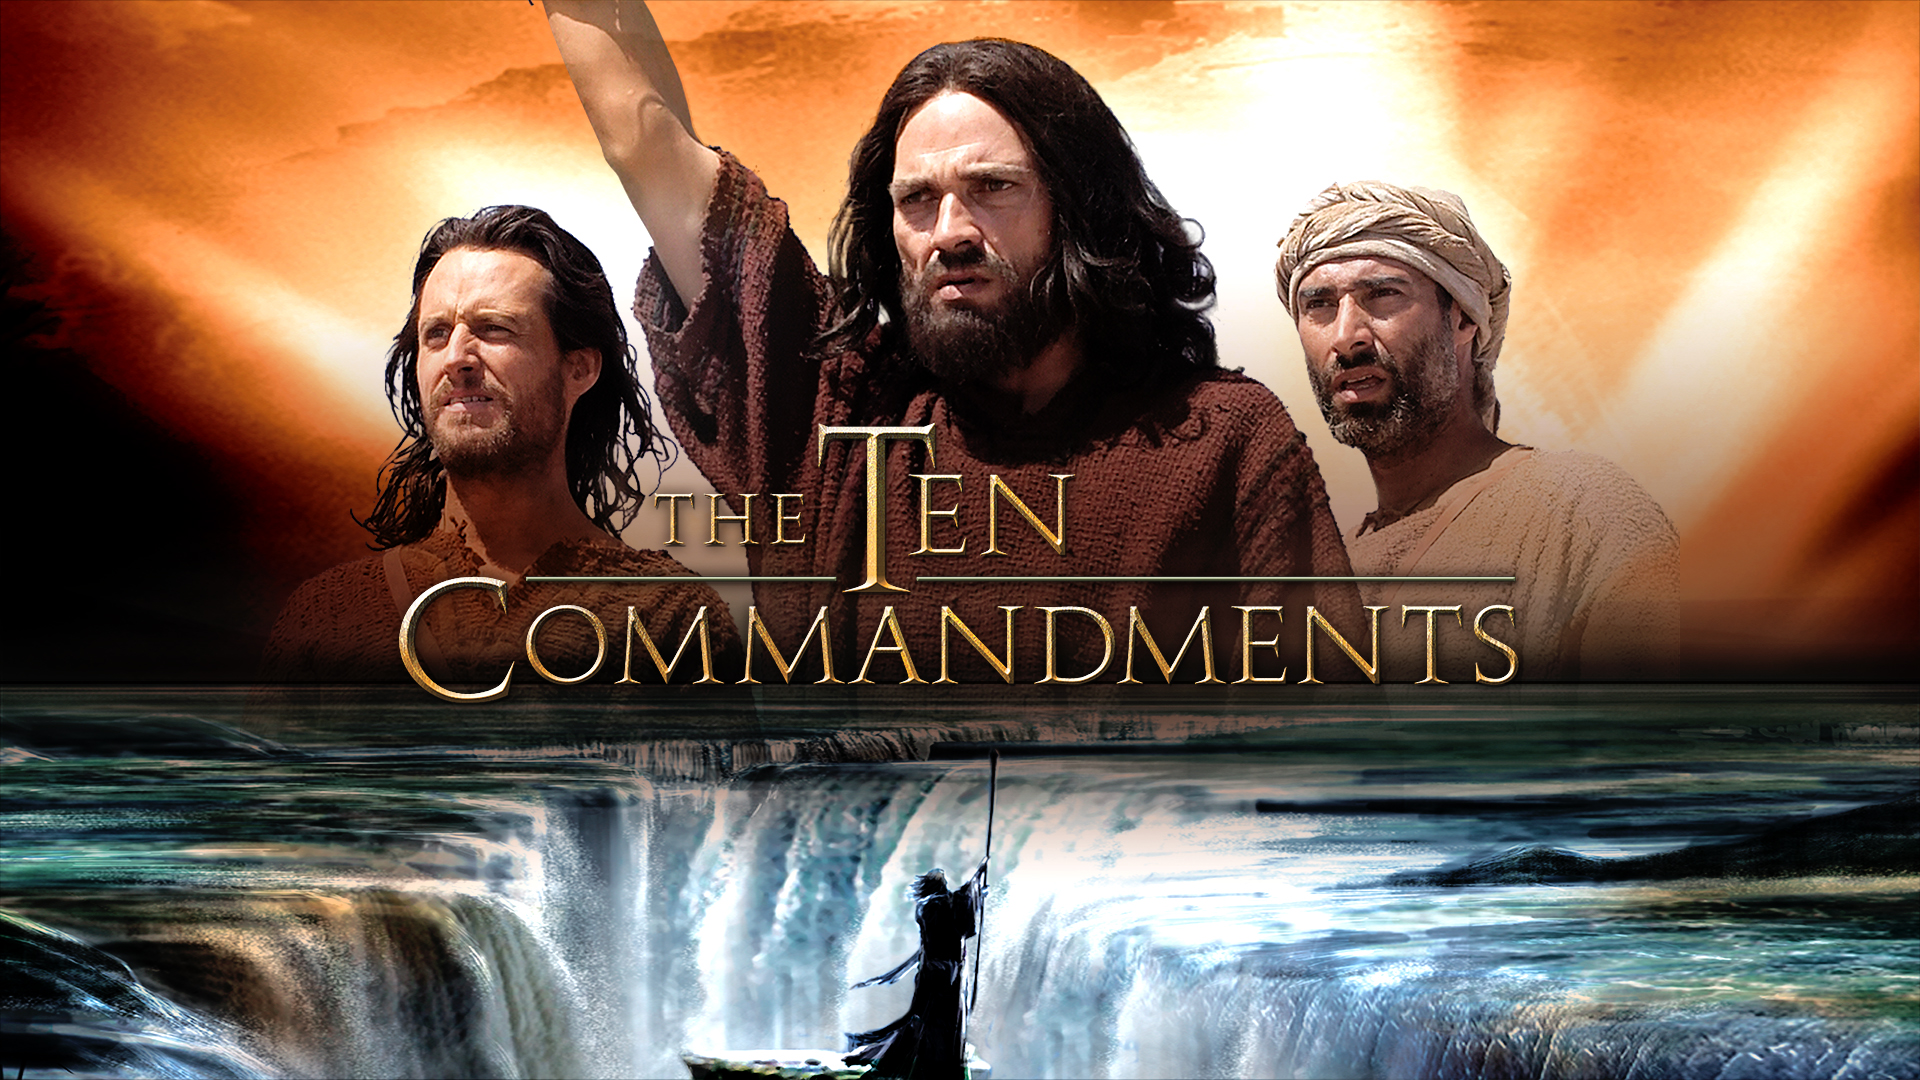 The Ten Commandments (Part 2)